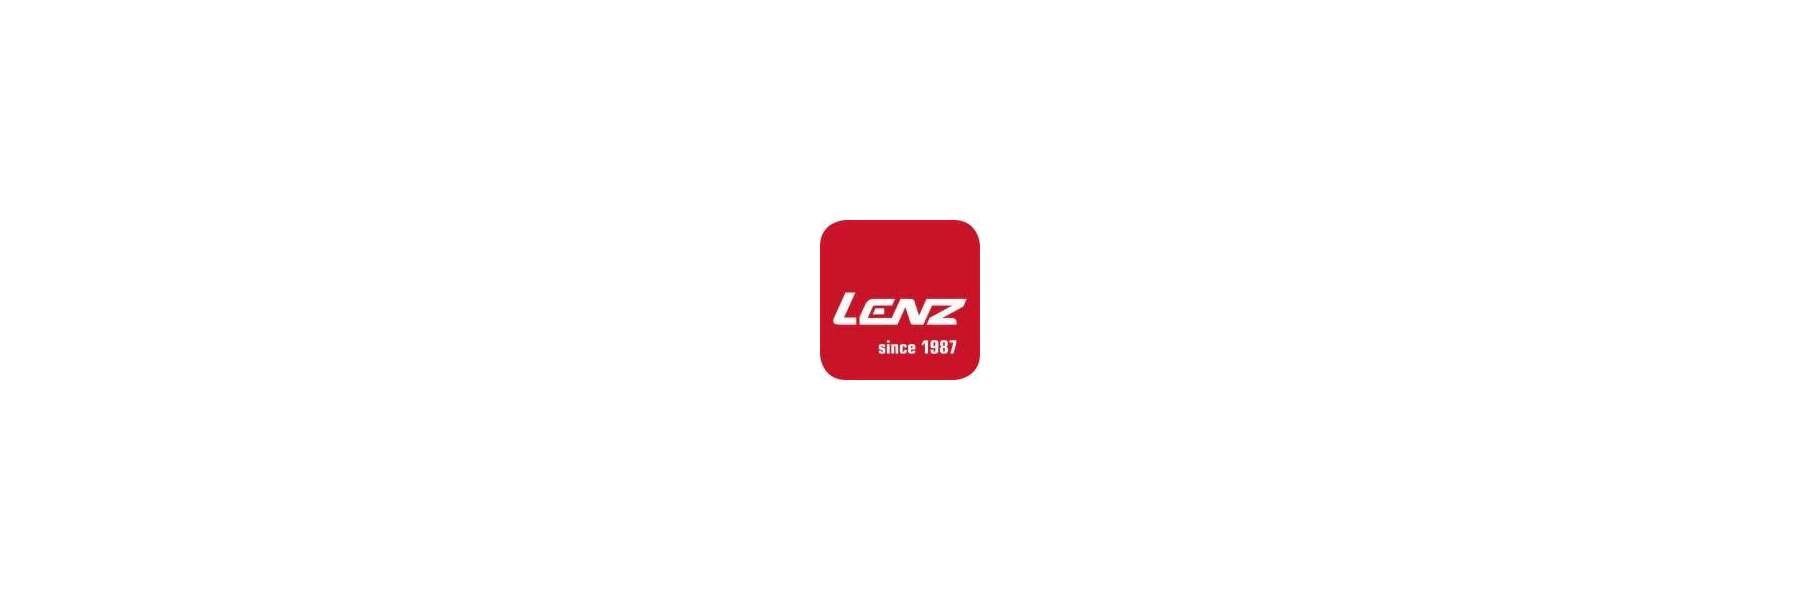  Seit 1987 erf&uuml;llen Produkte von Lenz...